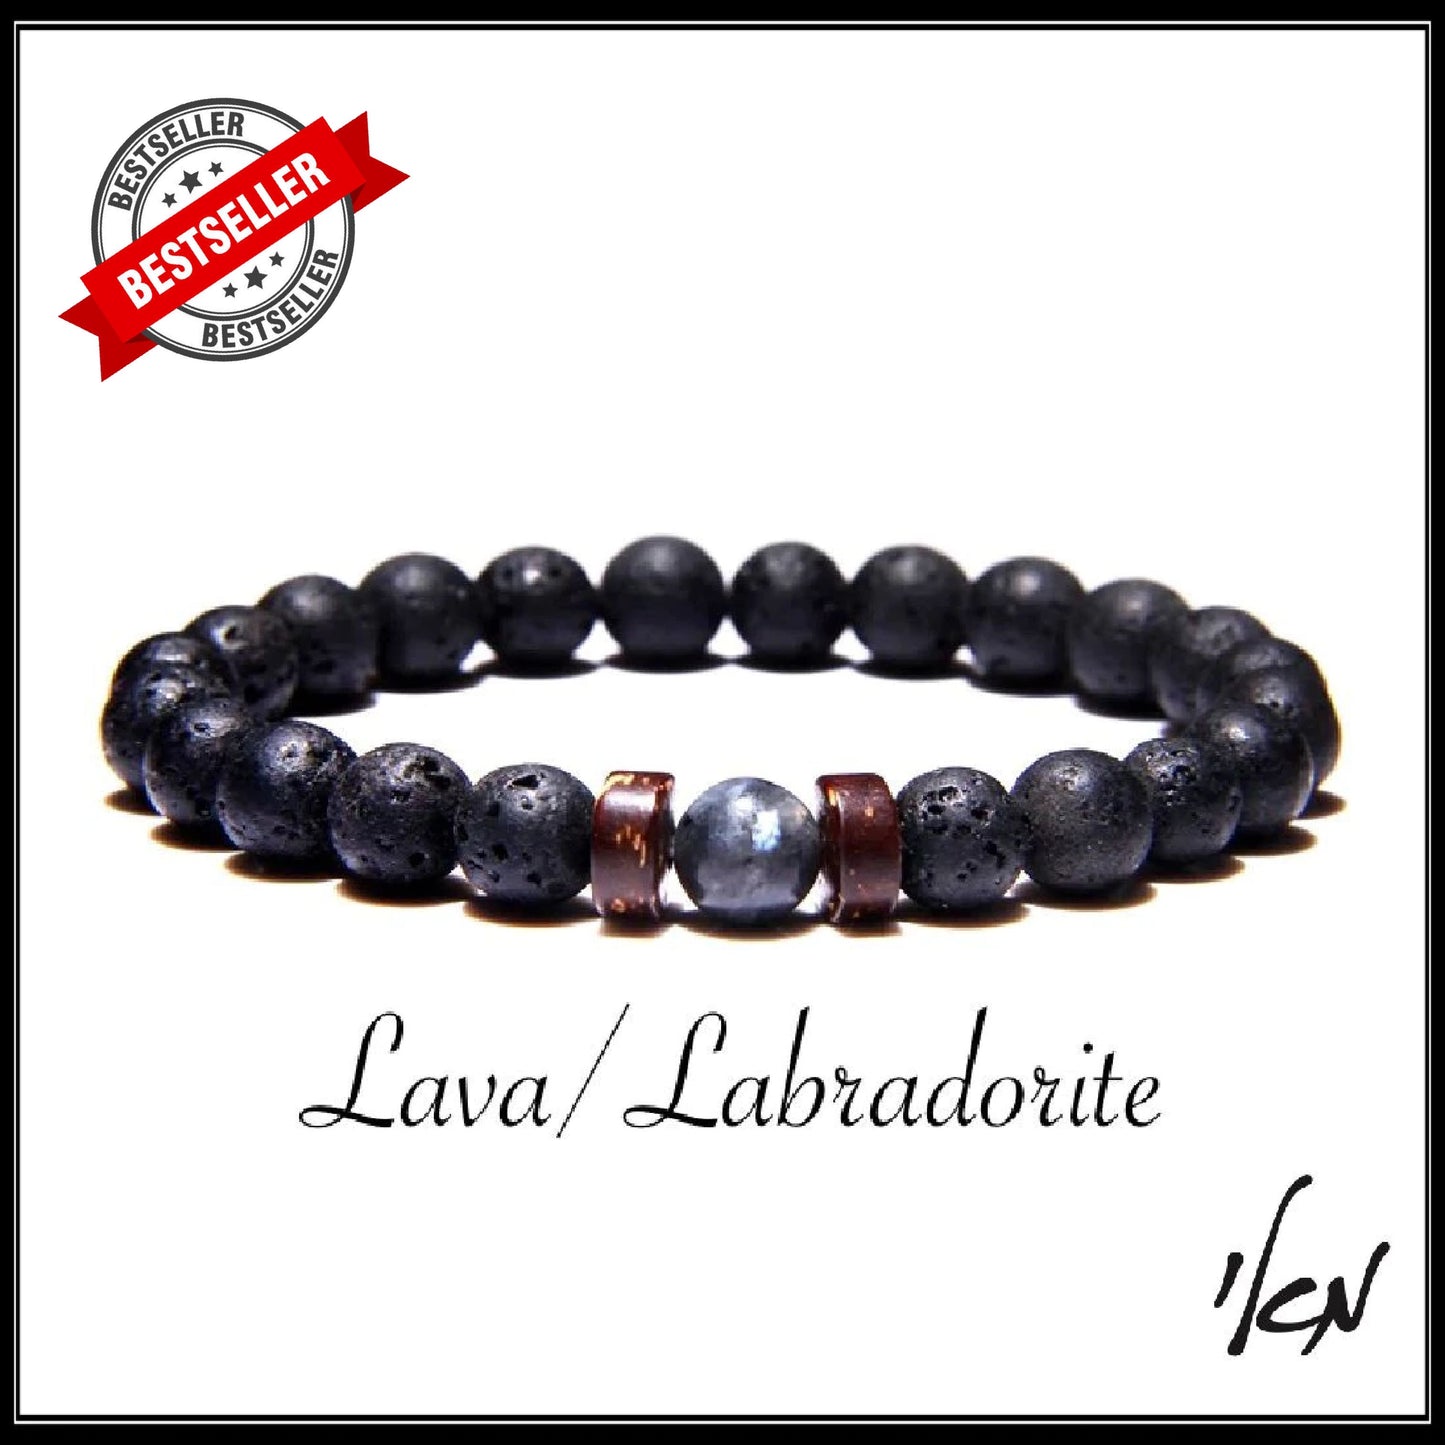 צמיד לאבה/לברדורייט - Lava stone - Labradorite stone bracelet